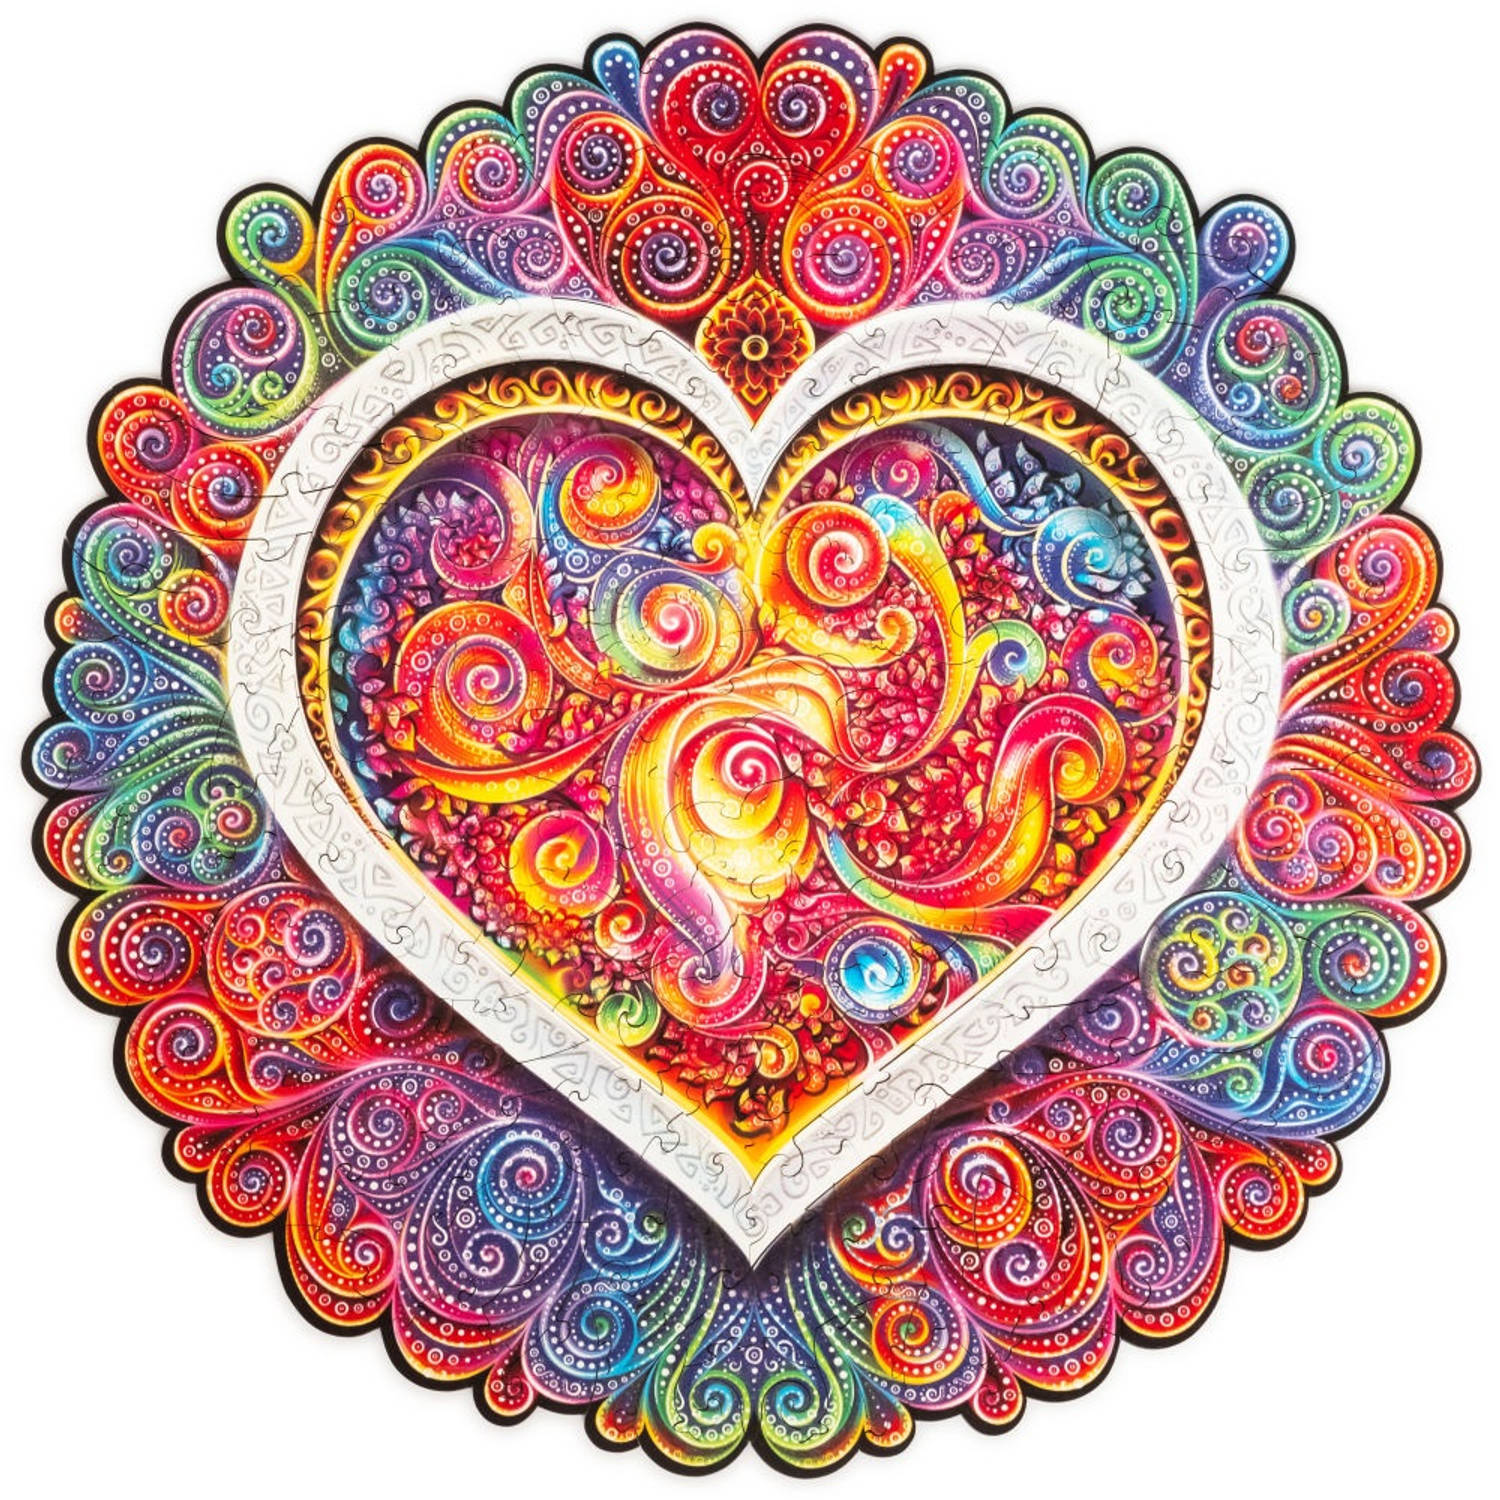 UNIDRAGON Houten Puzzel Mandala - Bewuste Liefde - 200 stukjes - Medium 25 cm